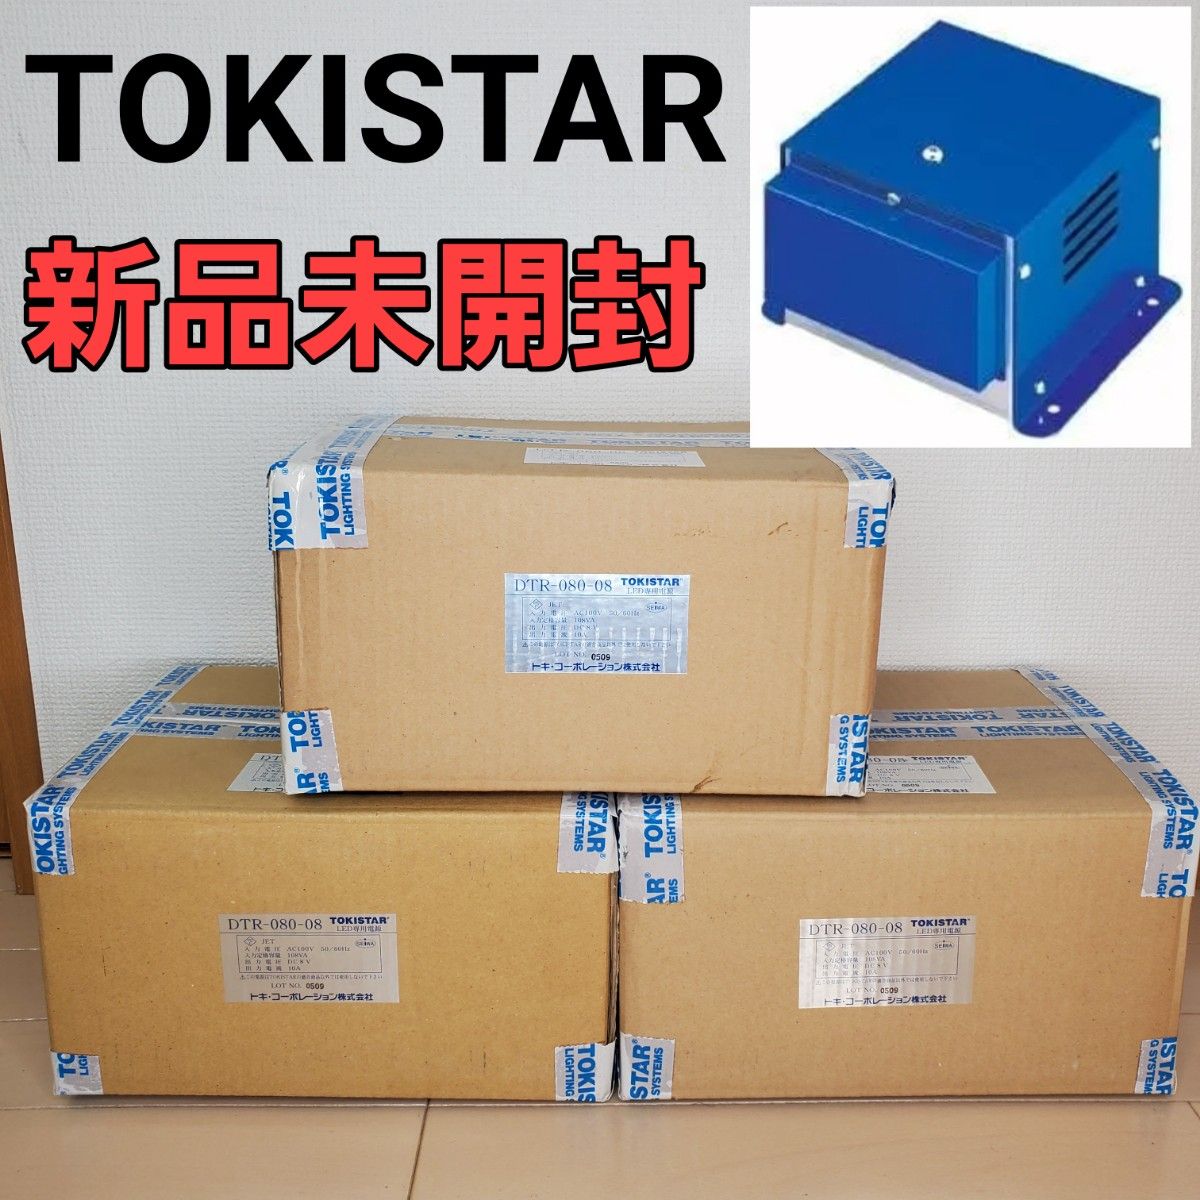 未開封 TOKISTAR LED専用電源 DTR-080-08 3個セット